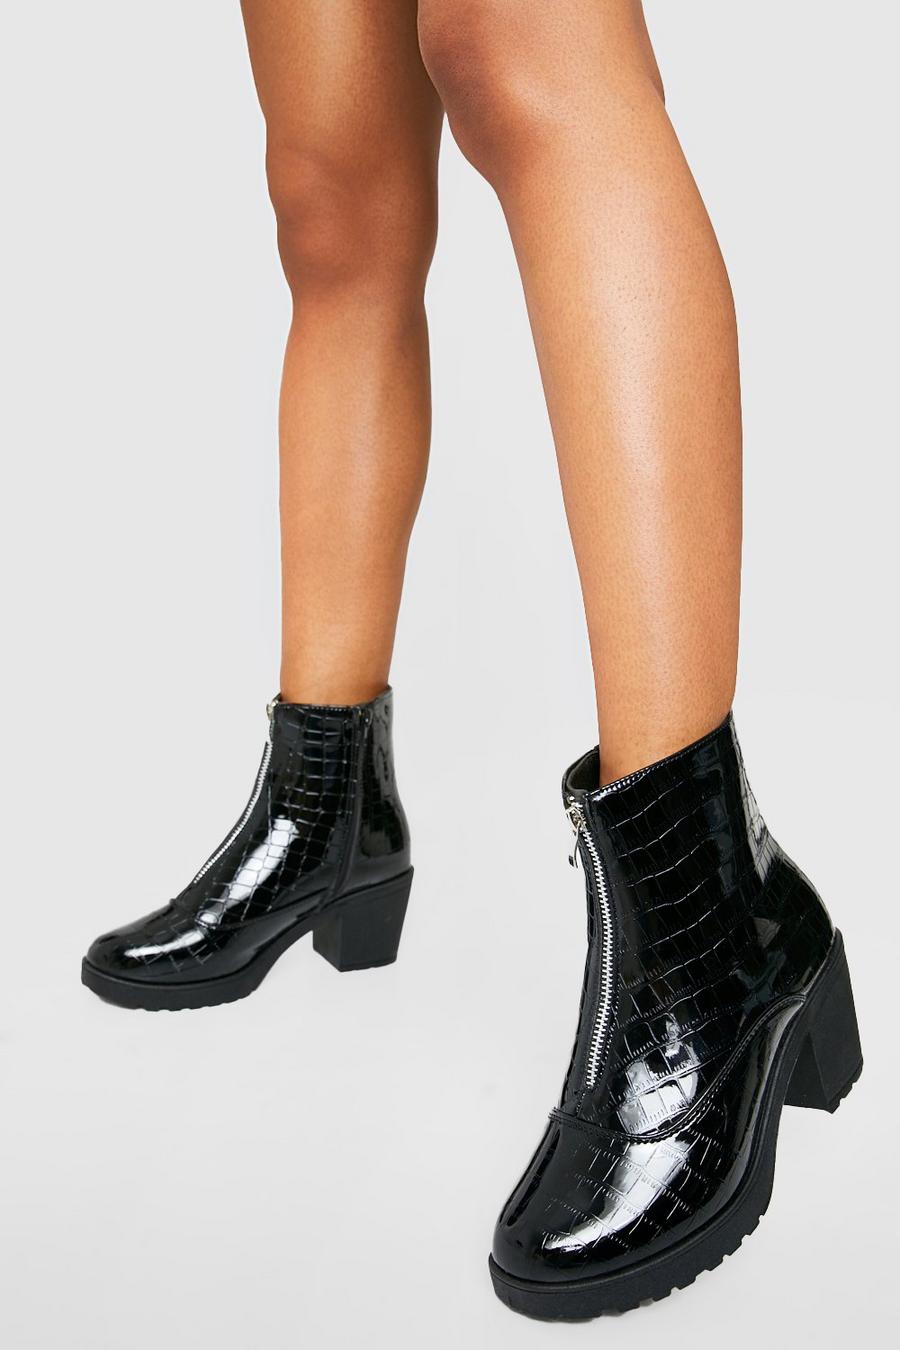 Black Patent Croc Zip Front Block Heel Chelsea Boot